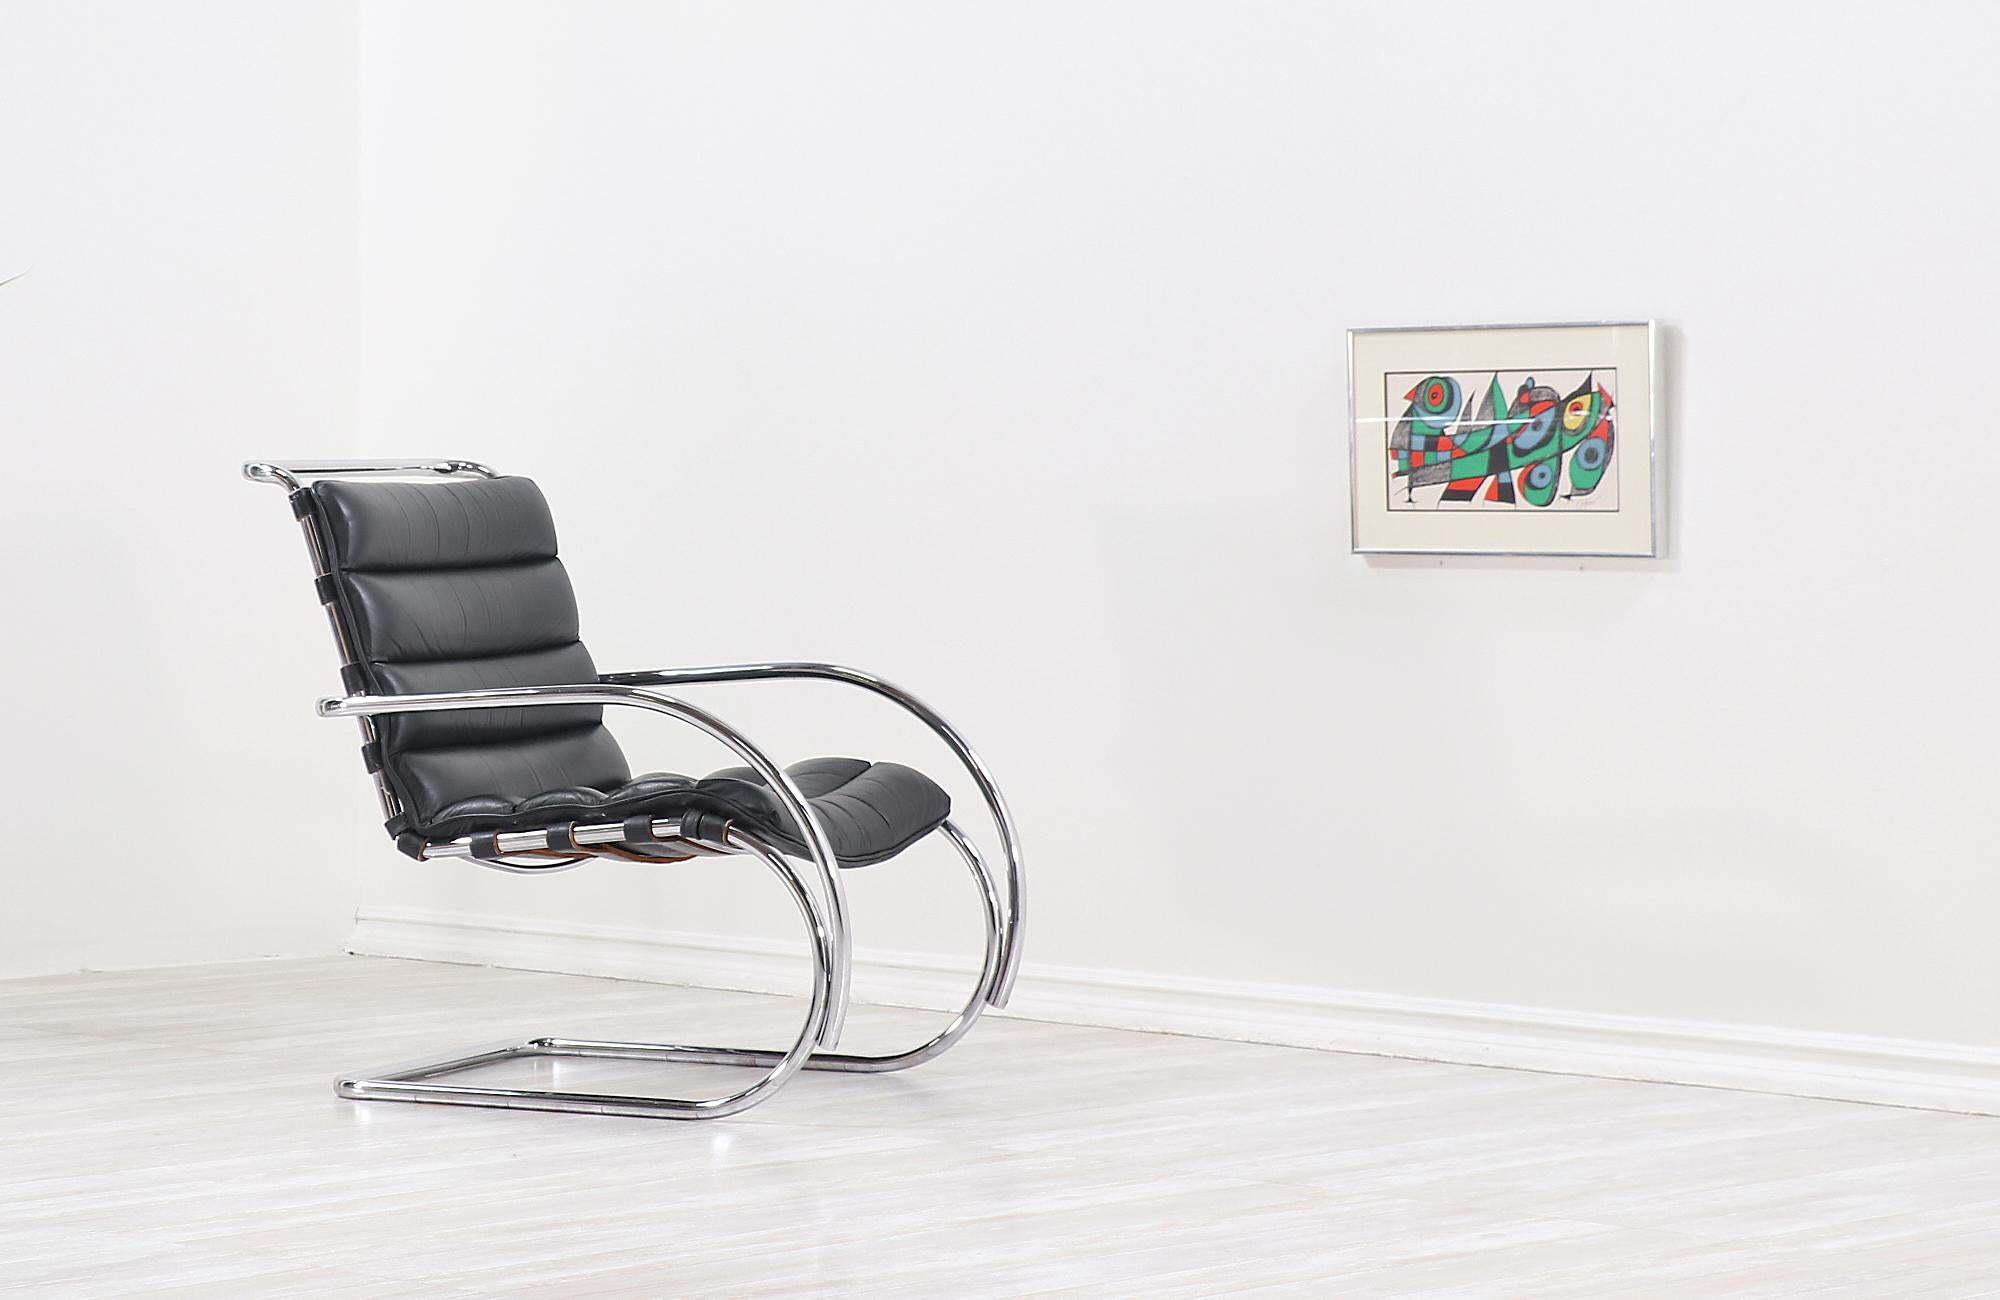 Vintage MR Lounge Chair:: entworfen von dem weltberühmten Architekten Ludwig Mies van der Rohe und hergestellt von Knoll Inc. um 1970er Jahre. Einer der bekanntesten Vertreter der Moderne im Internationalen Stil. Seine 